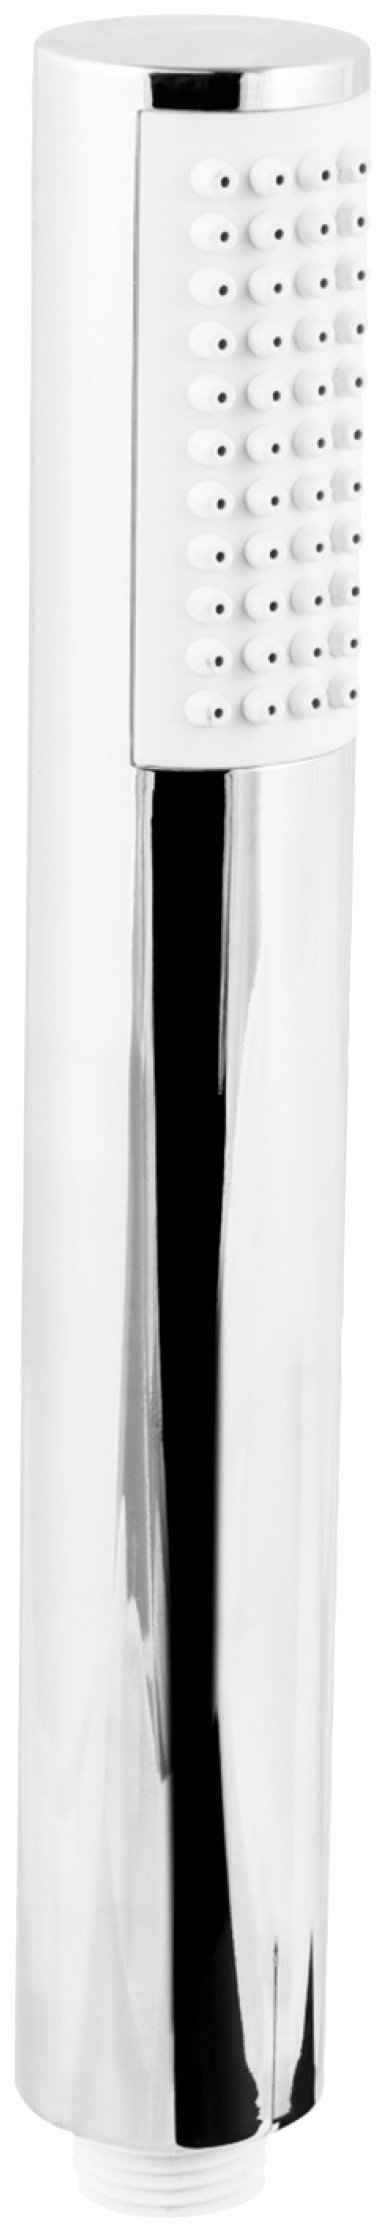 CORNAT Handbrause Anti-Kalk - 60 x 32 mm Kopf-Größe - verchromt - 1 Strahlart, Wasserspareinsatz / Brausekopf Dusche & Badewanne